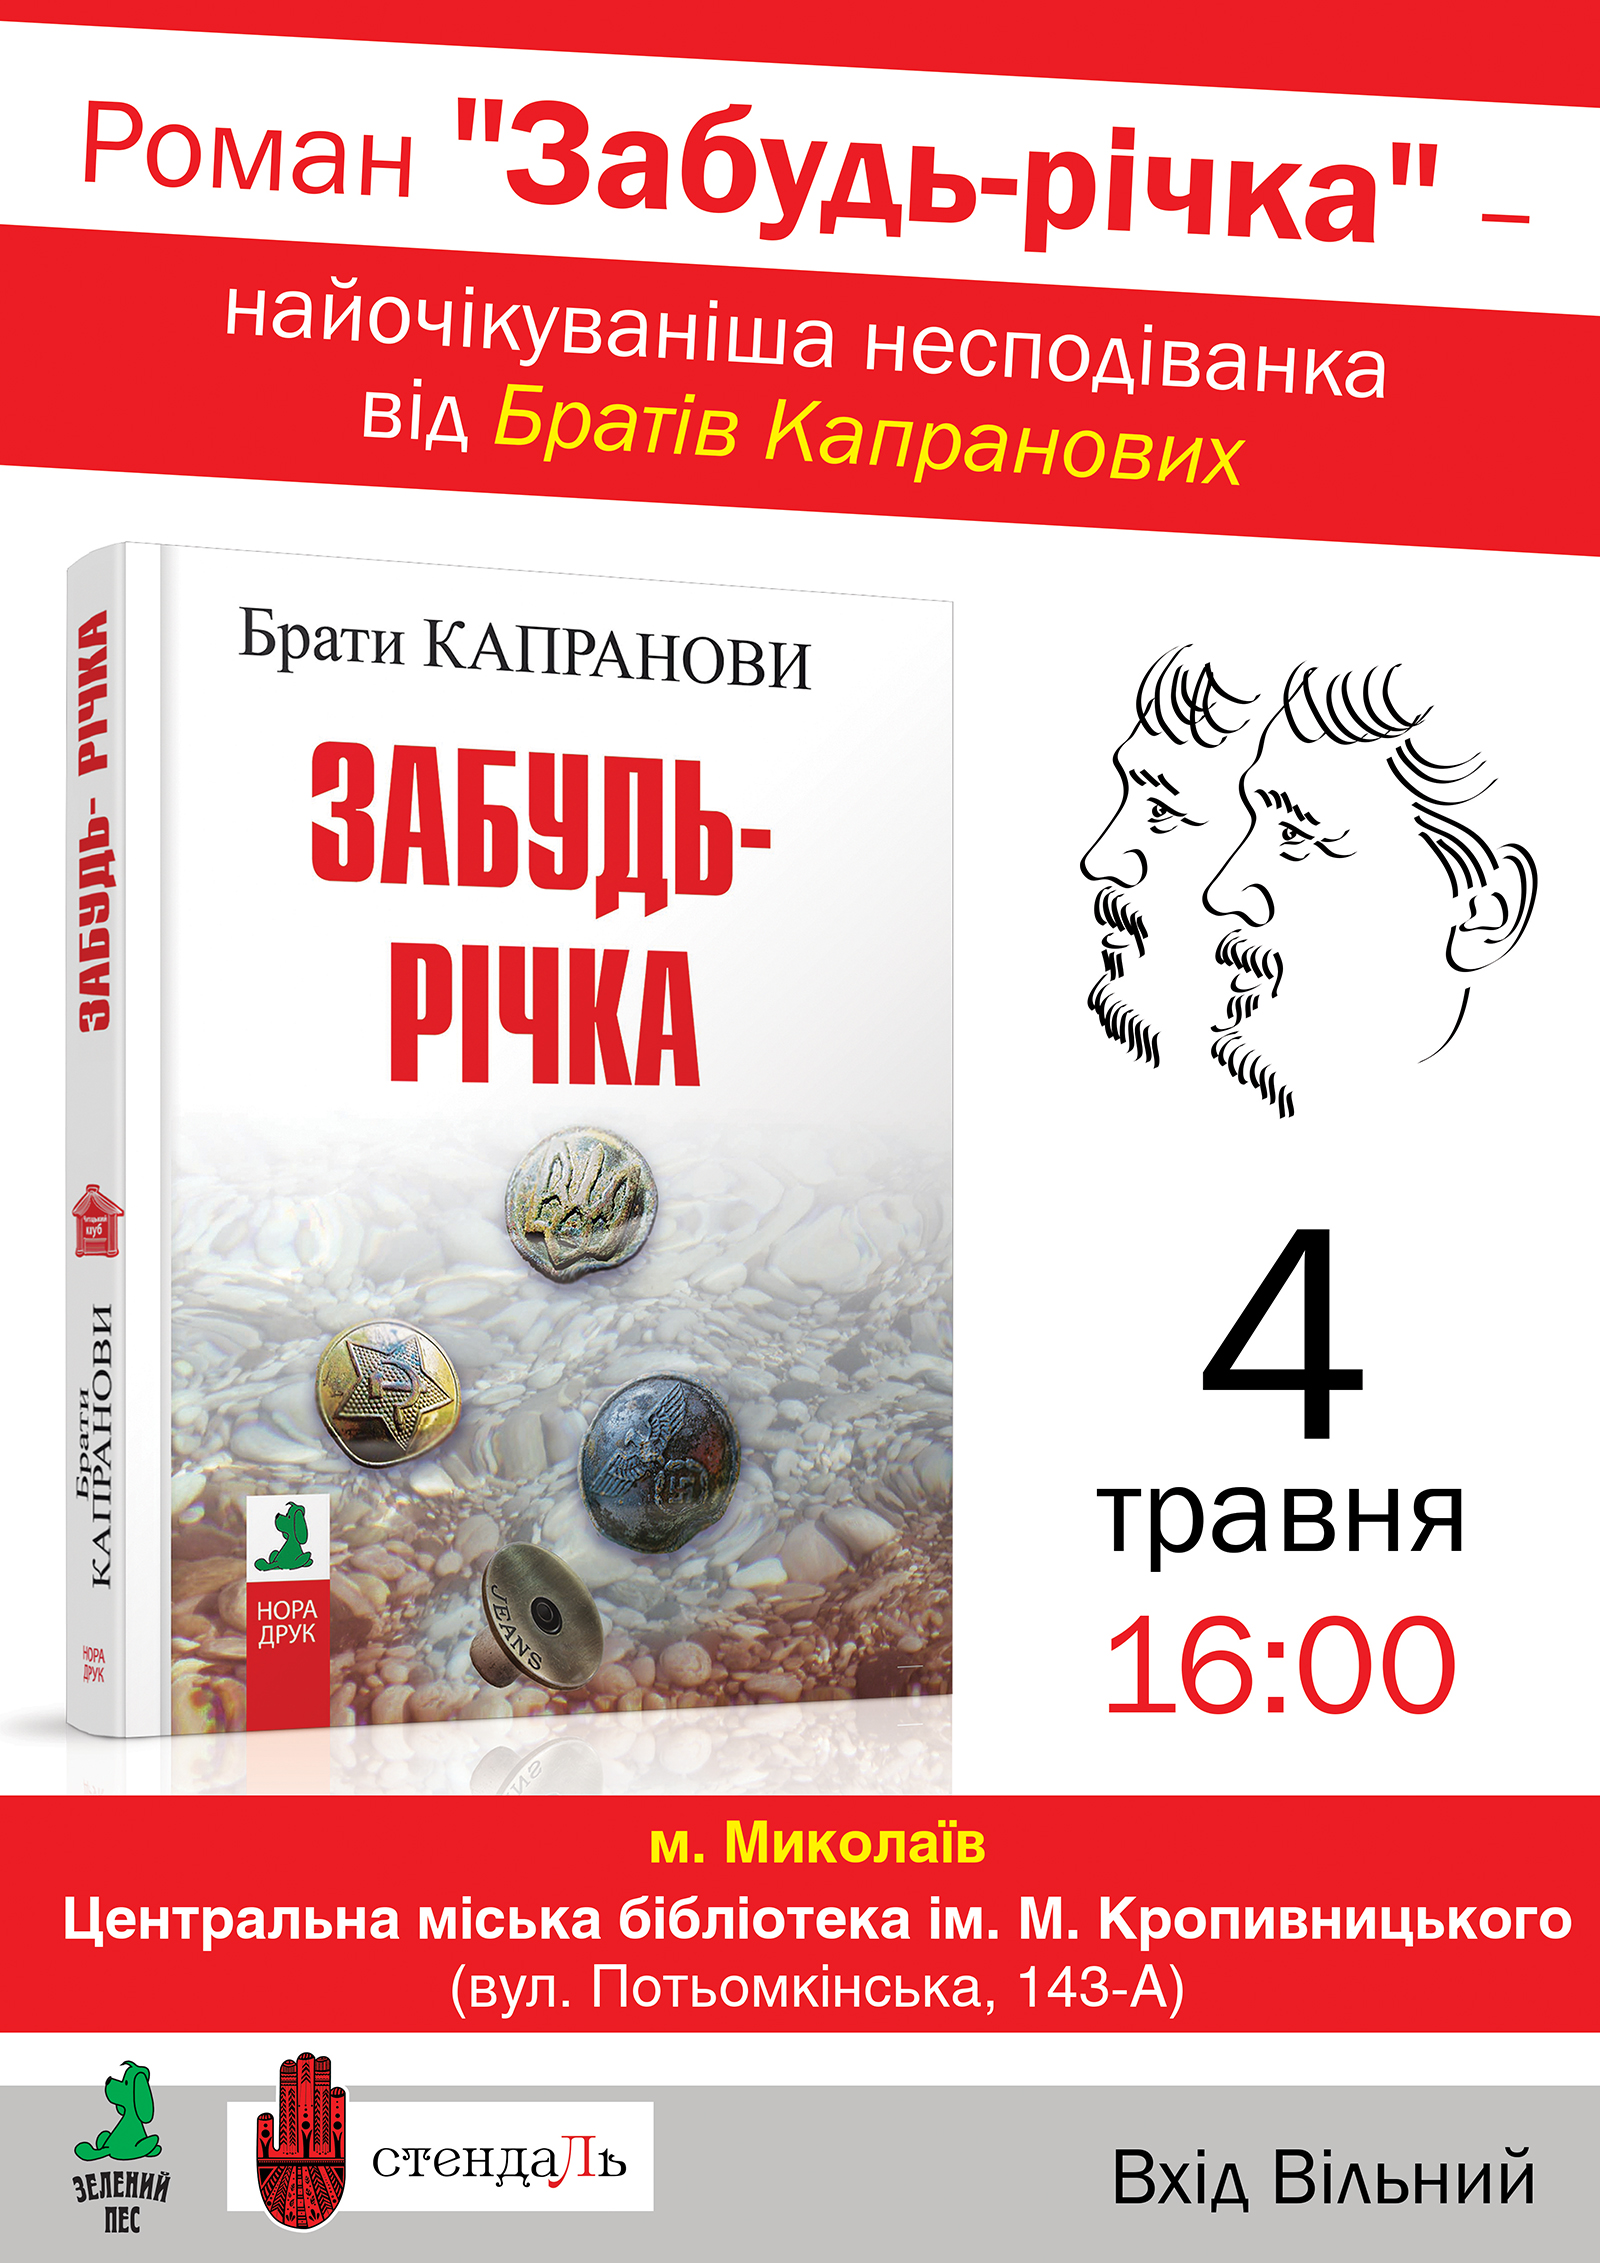 Брати Капранови презентують миколаївцям нову книгу